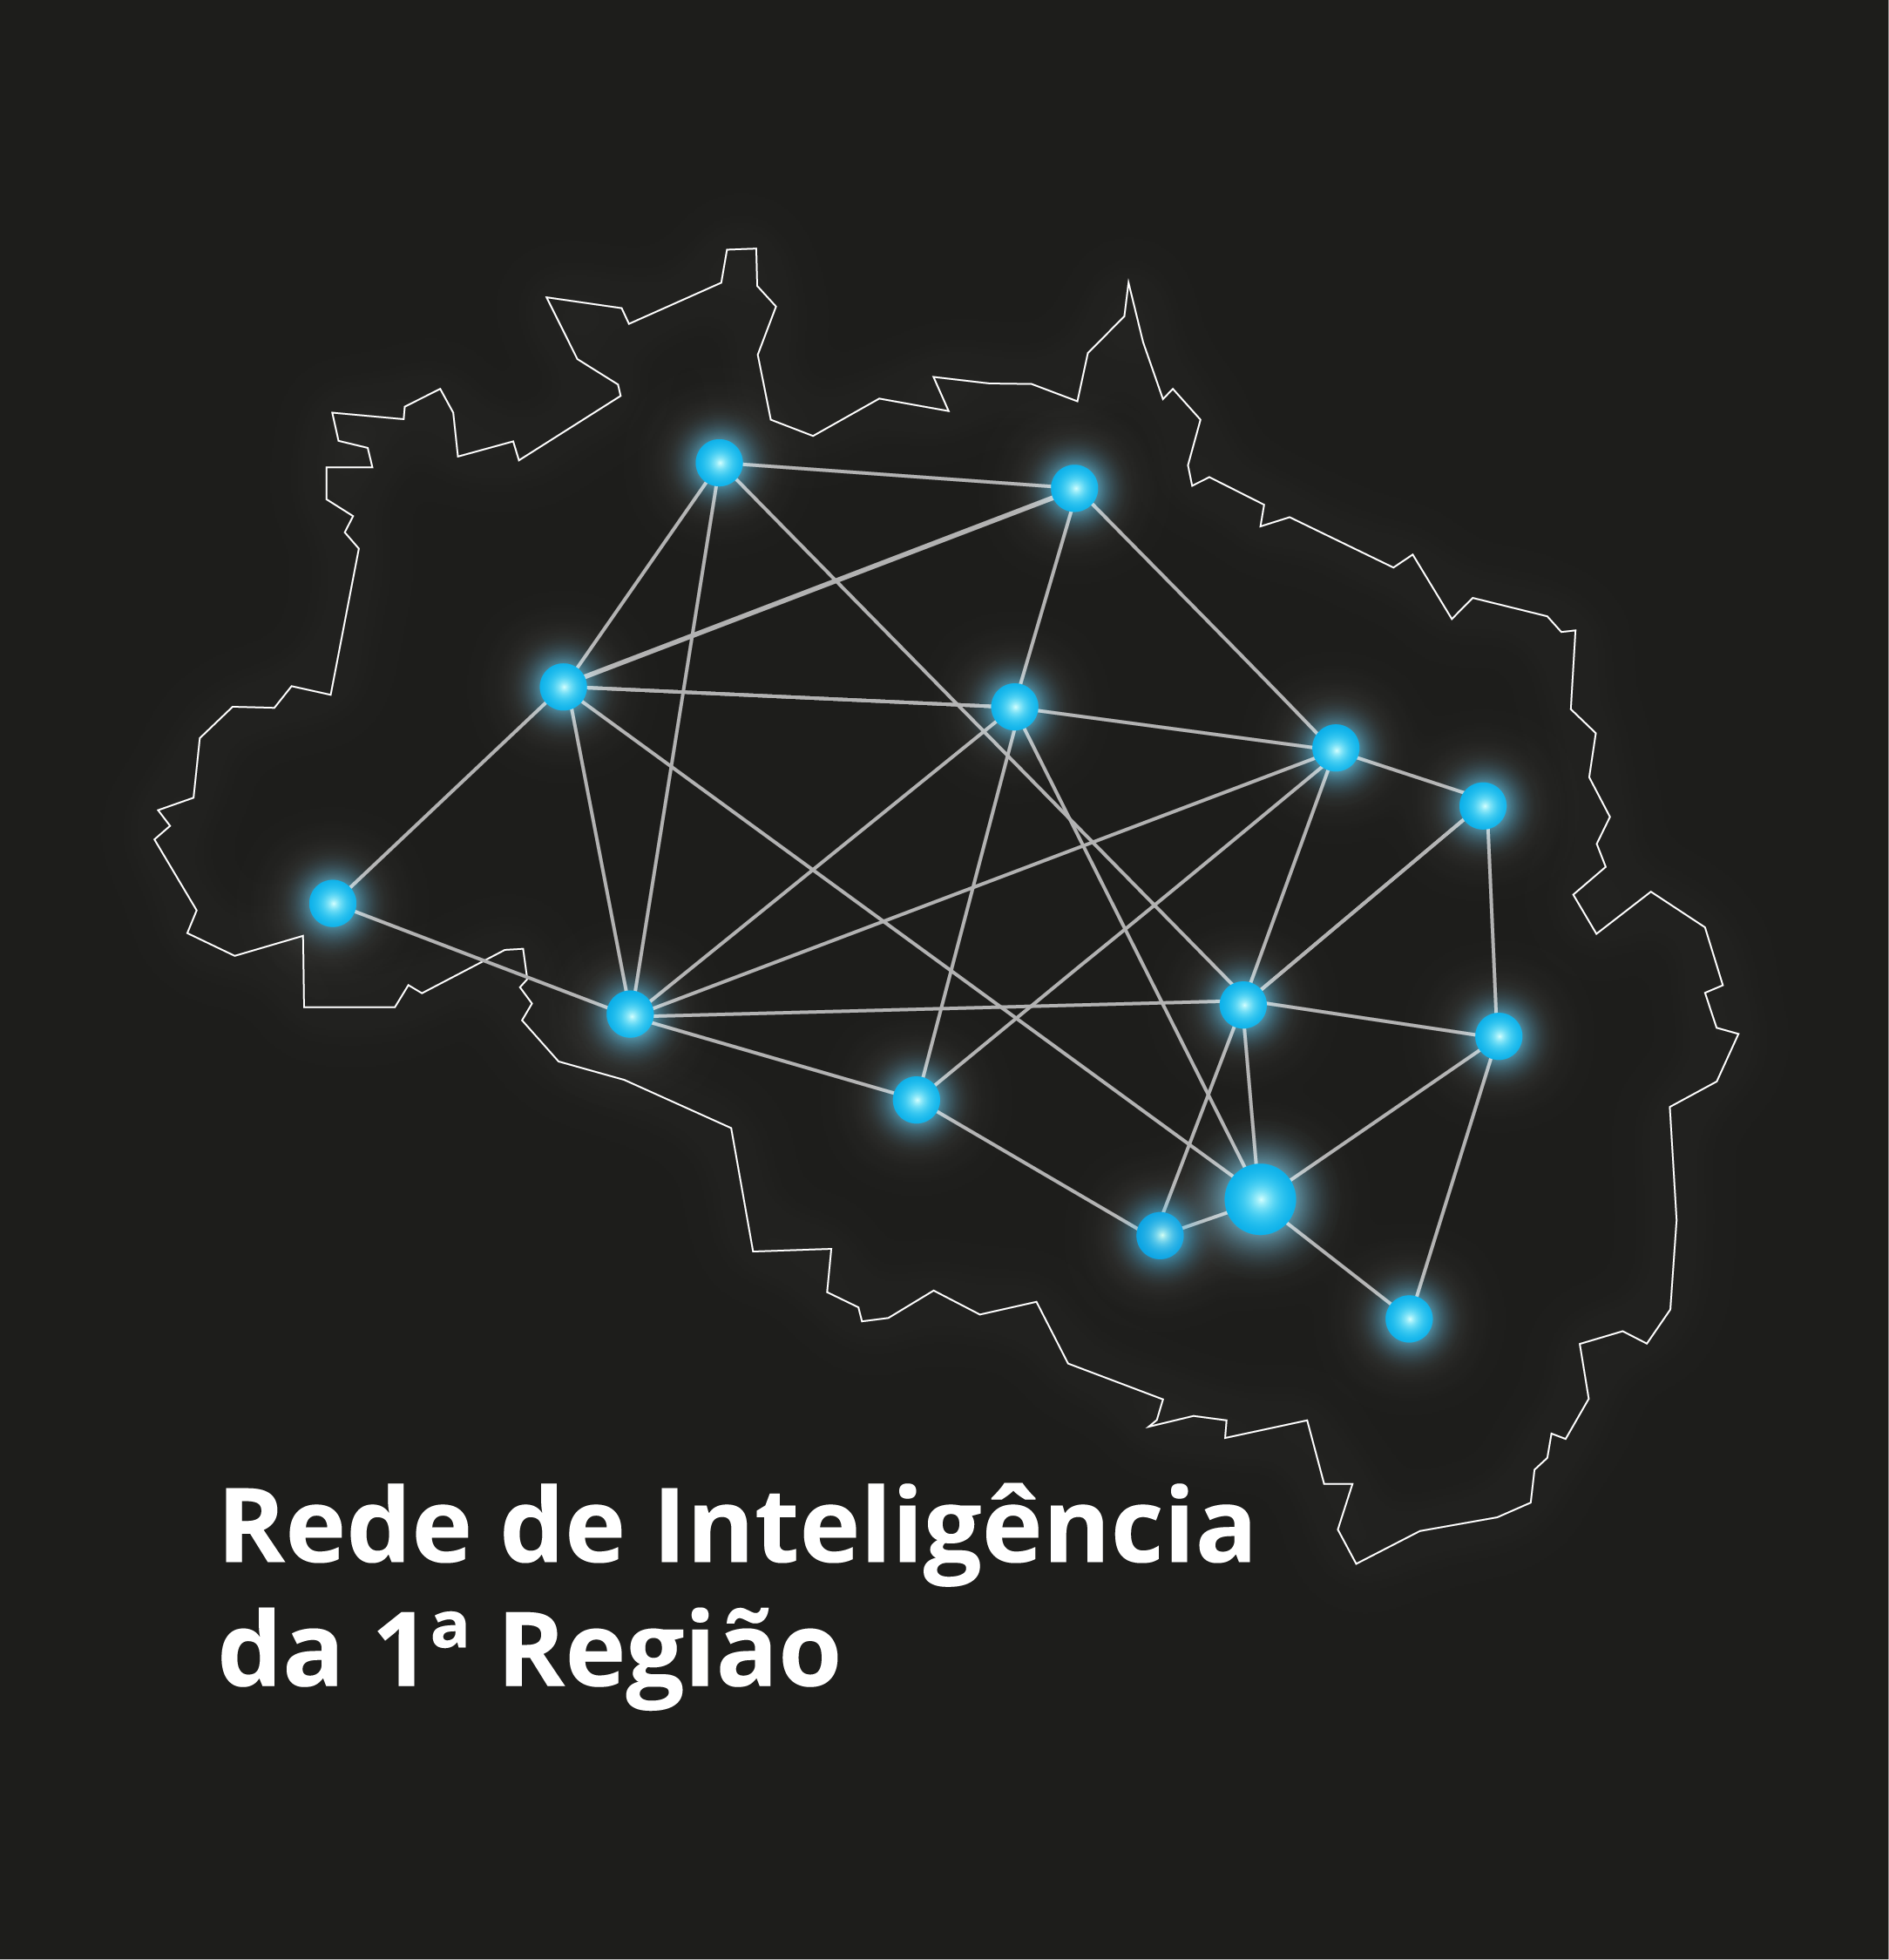 INSTITUCIONAL: Rede de Inteligência da 1ª Região promove debate sobre Sistema de Interoperabilidade proposto pelo CNJ